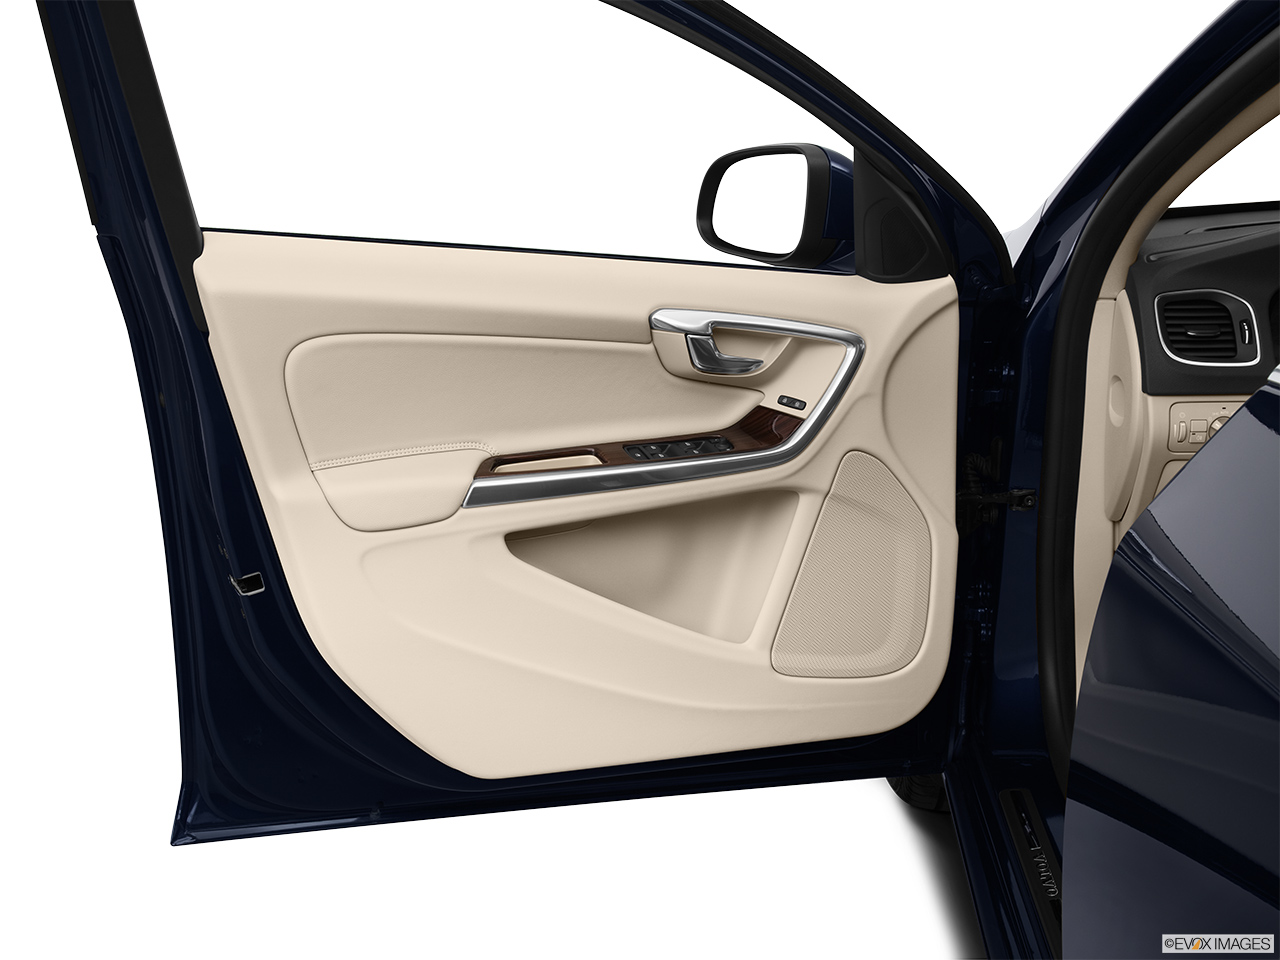 2013 Volvo S60 T5 FWD Premier Inside of driver's side open door, window open. 